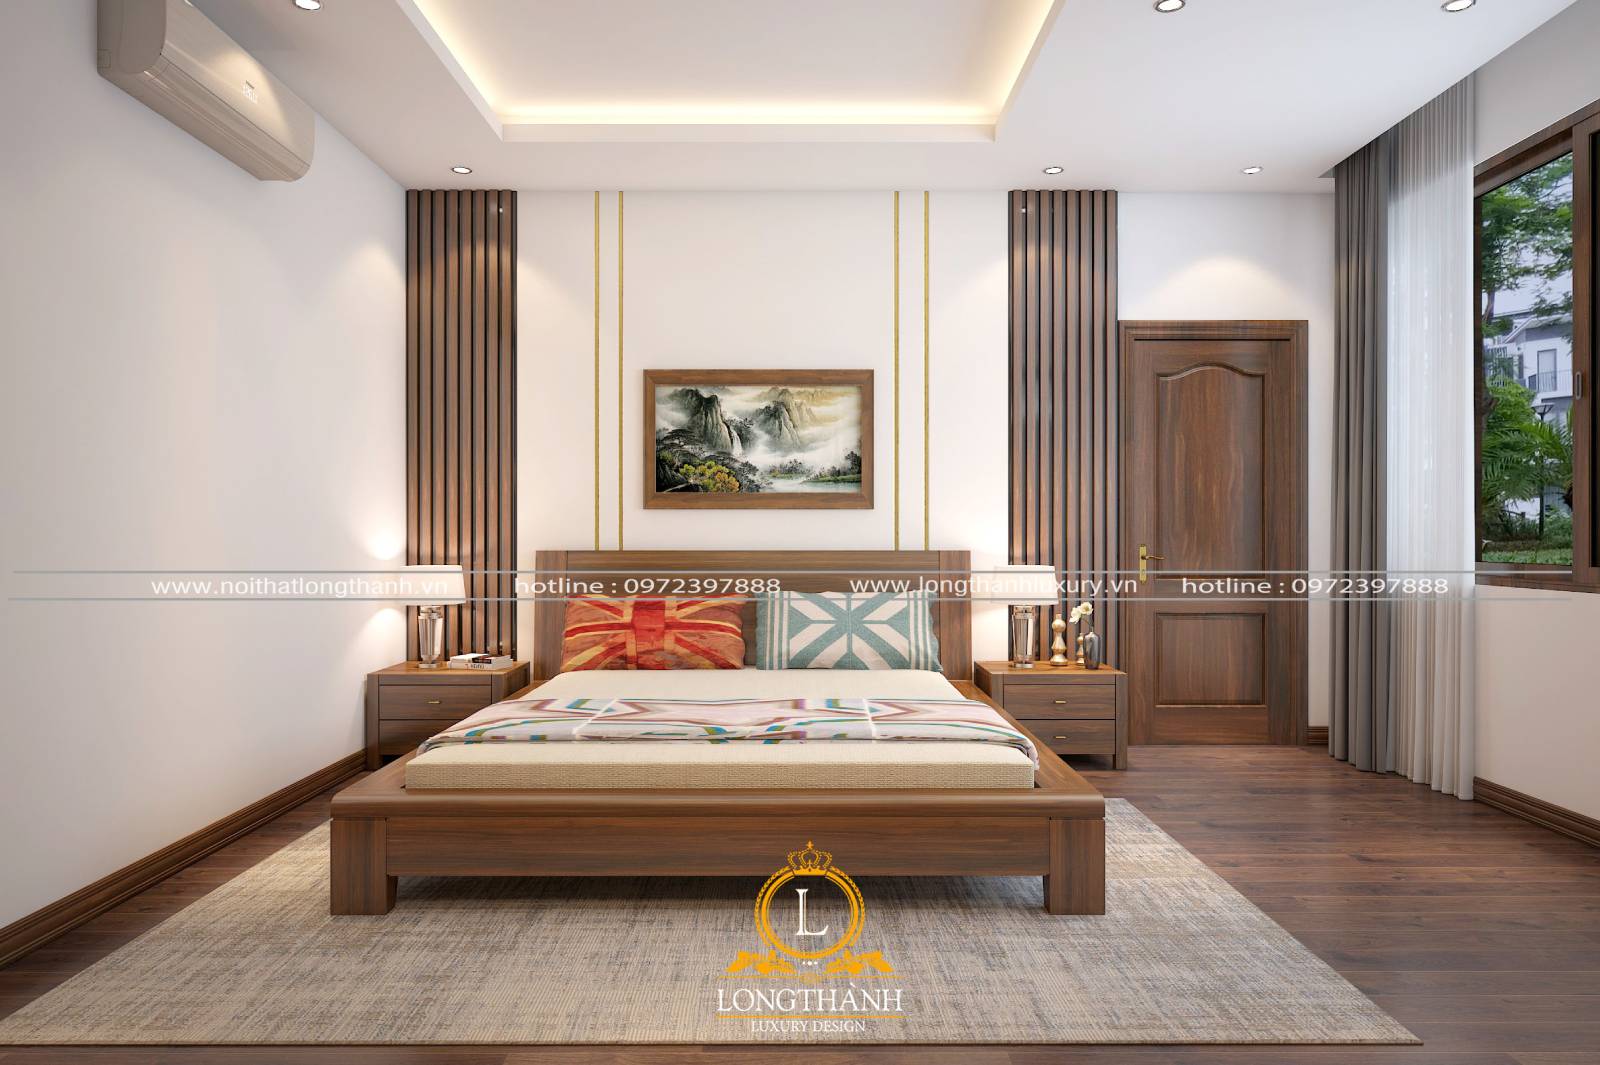 Combo giường ngủ và nội thất gỗ tự nhiên mang đến vẻ đẹp sang trọng cho không gian